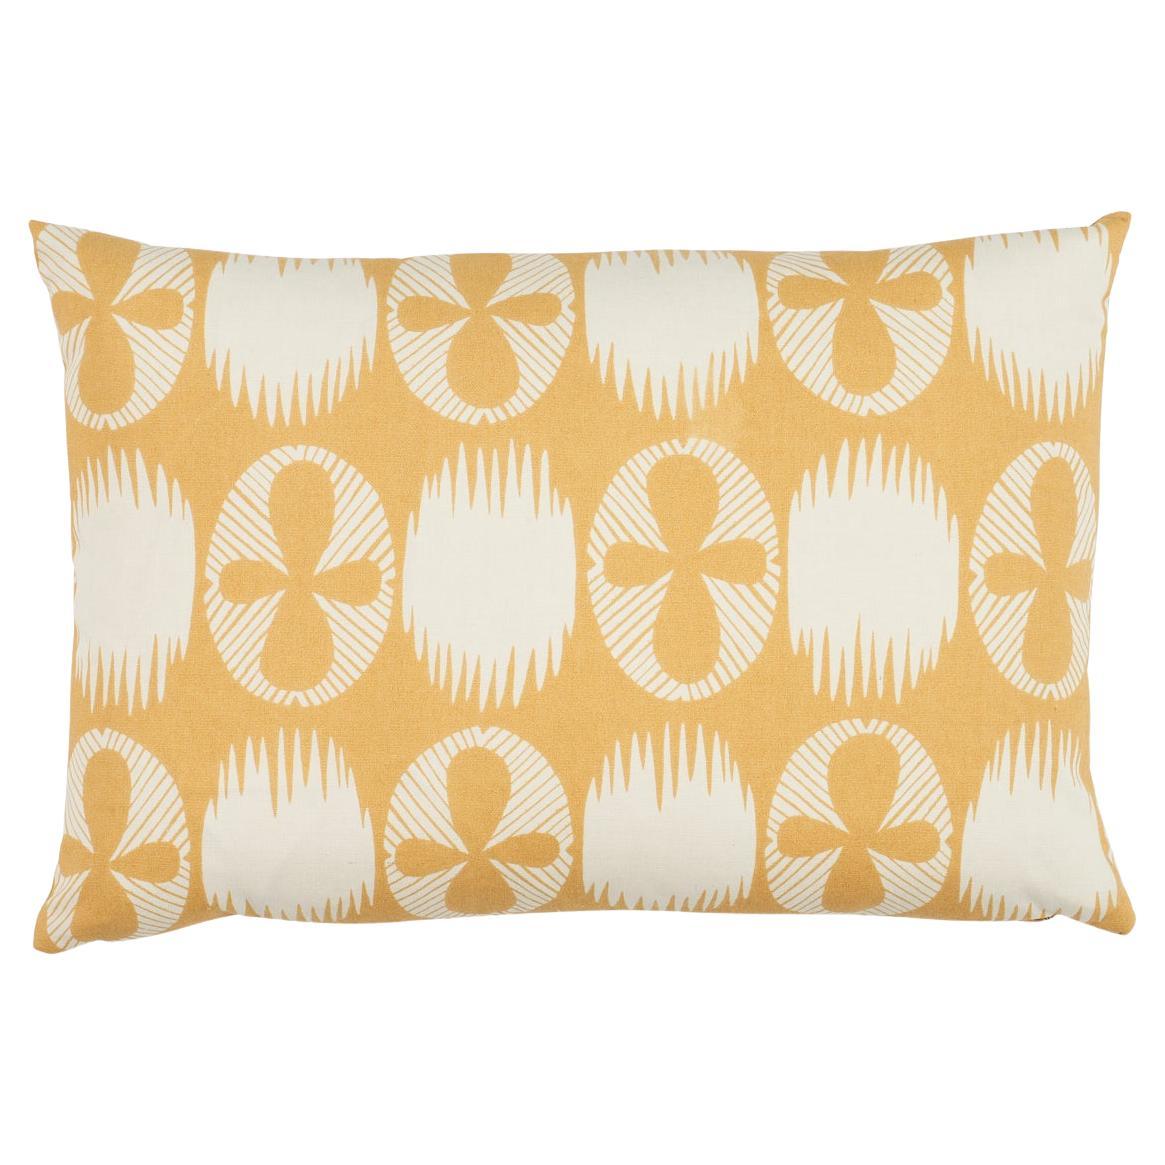 Lunaria Pillow in Ochre, 18x12"